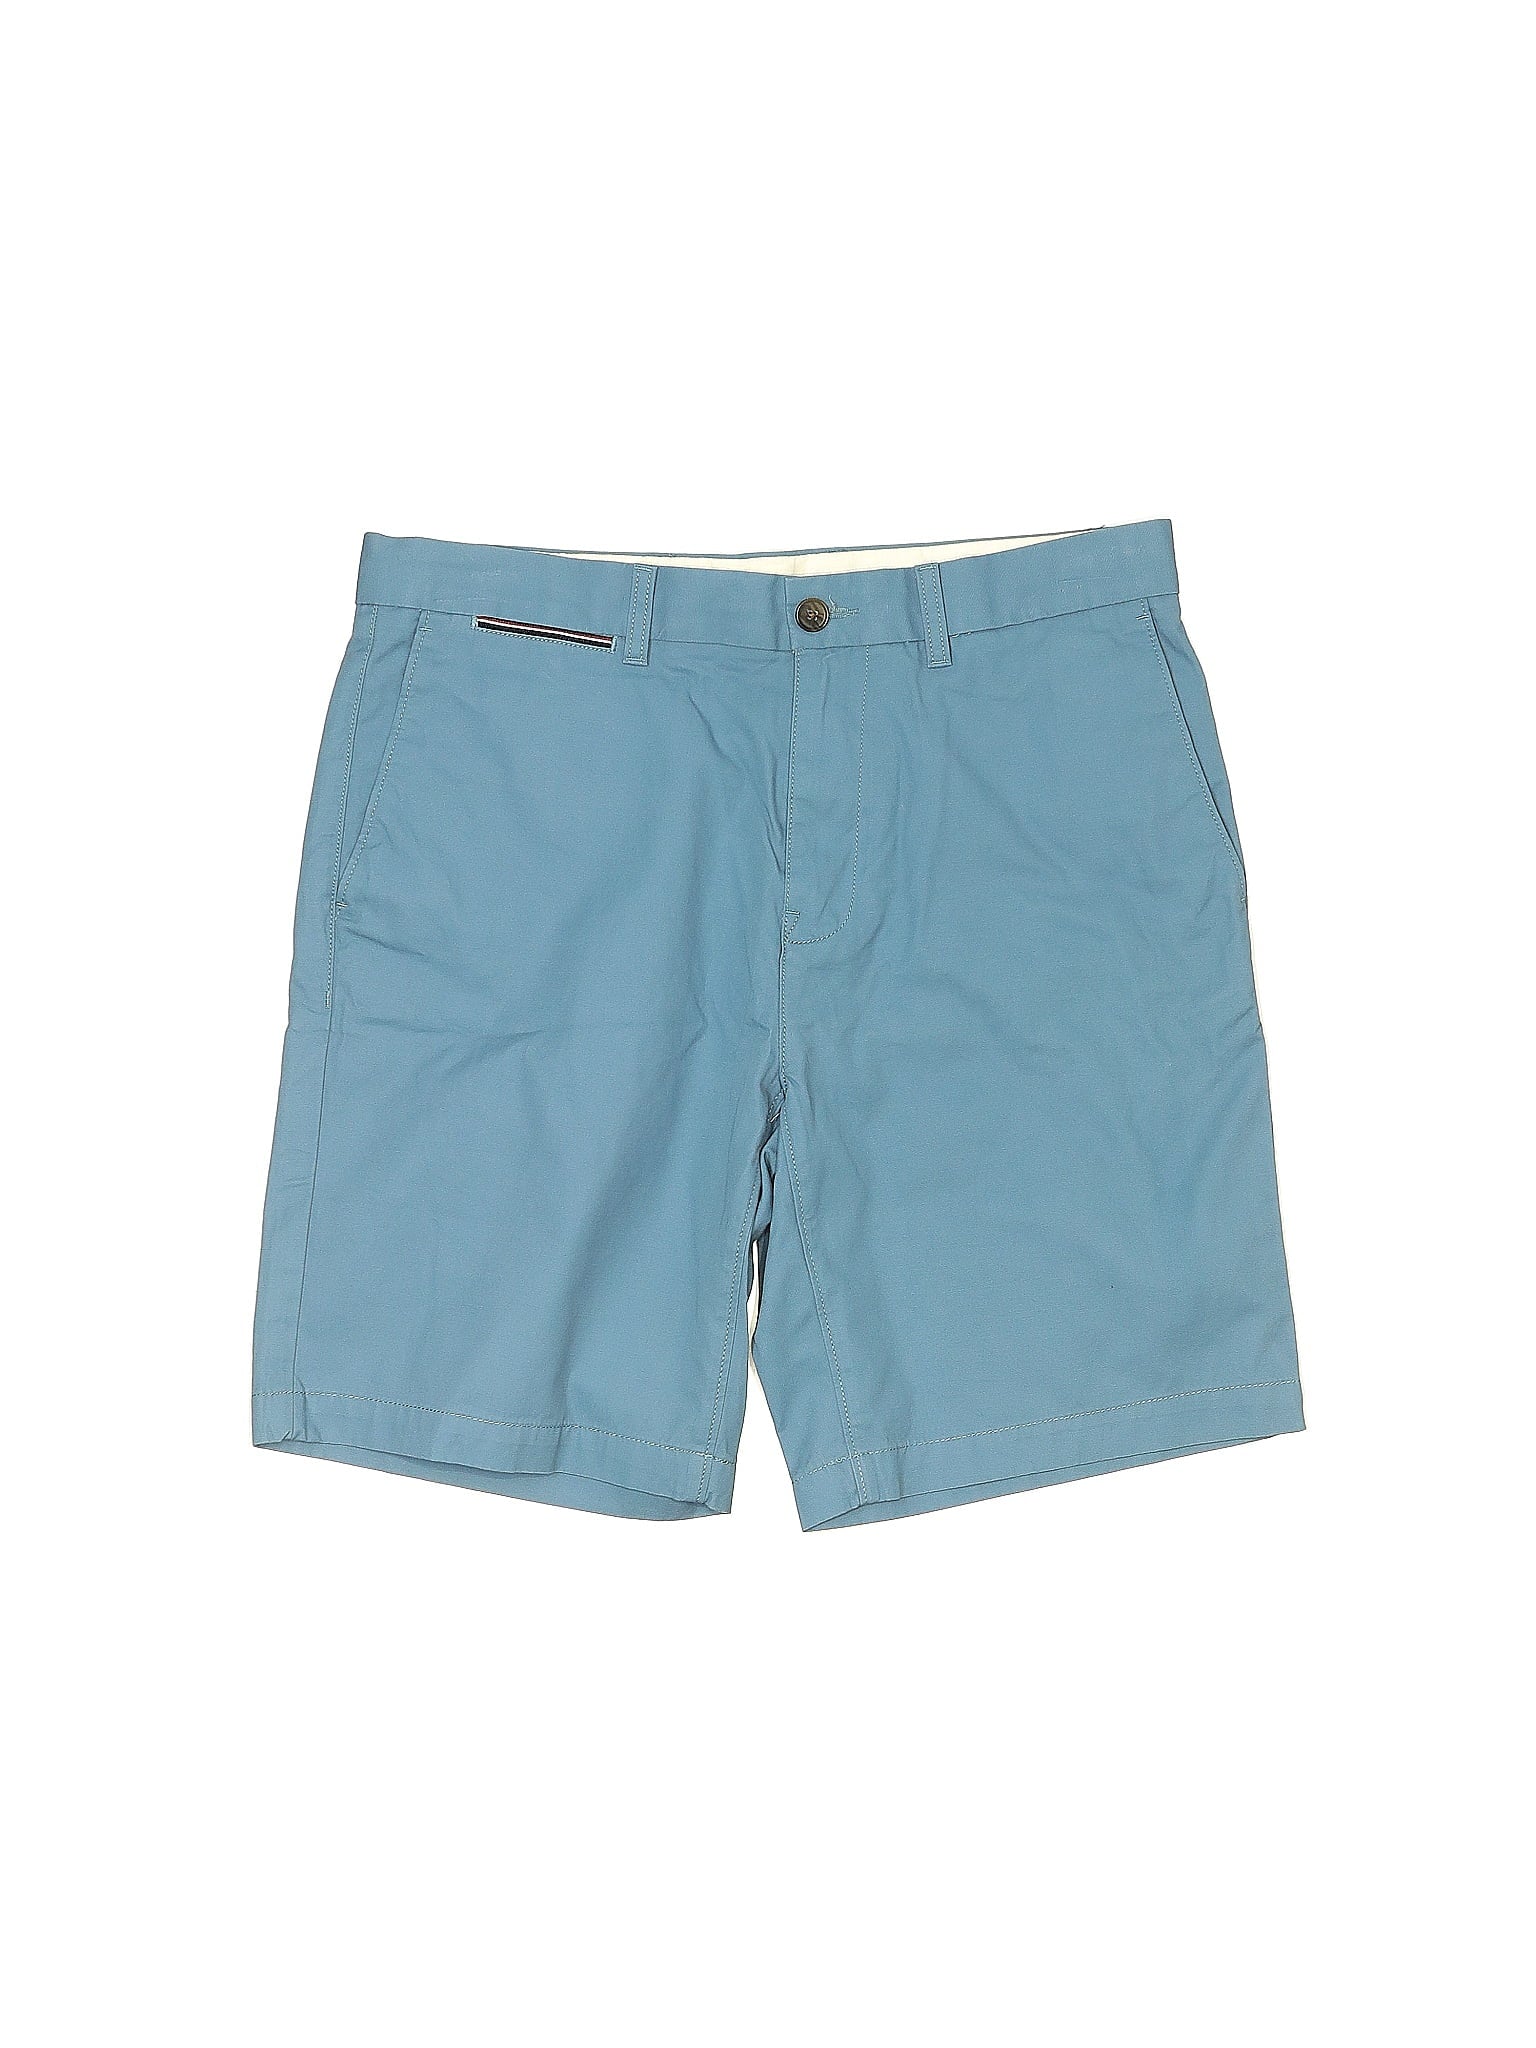 Khaki/Chino Shorts waist size - 32